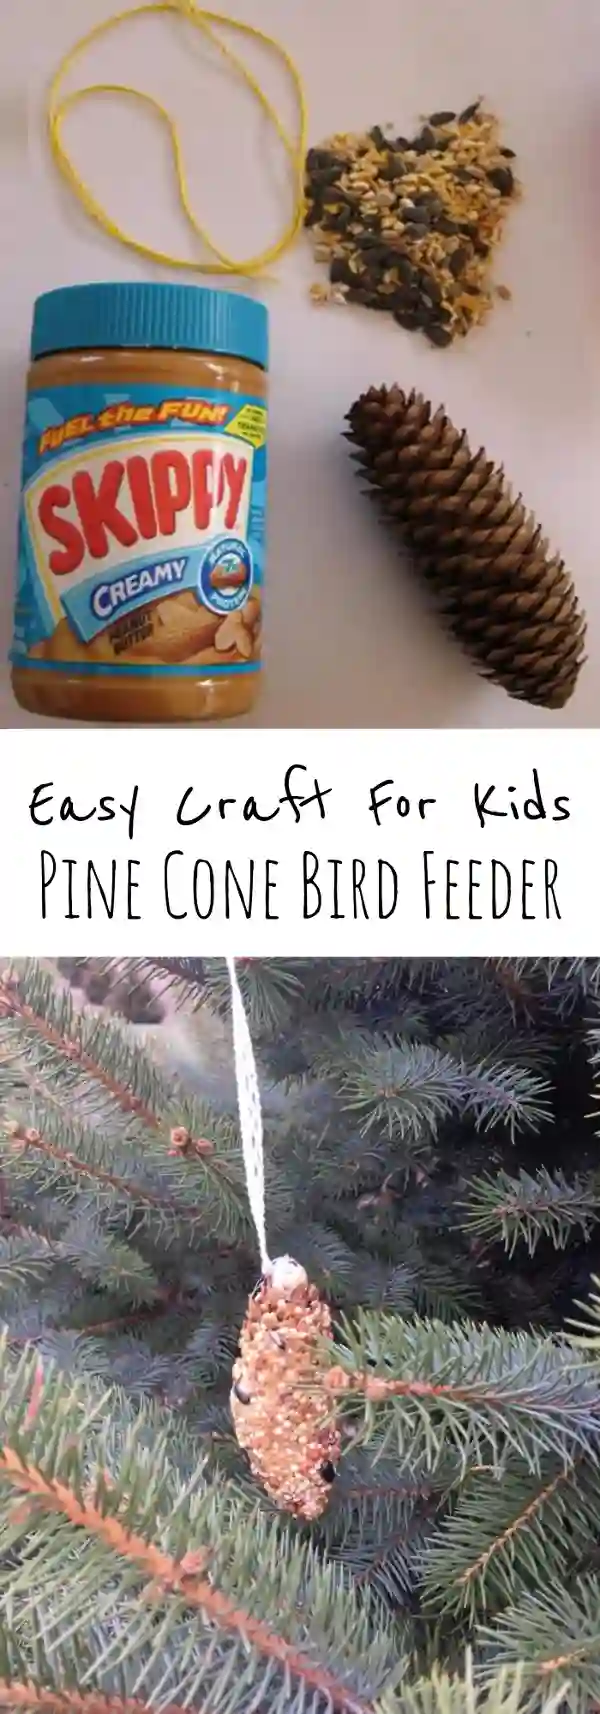 Pine Cone Bird Feeder Craft